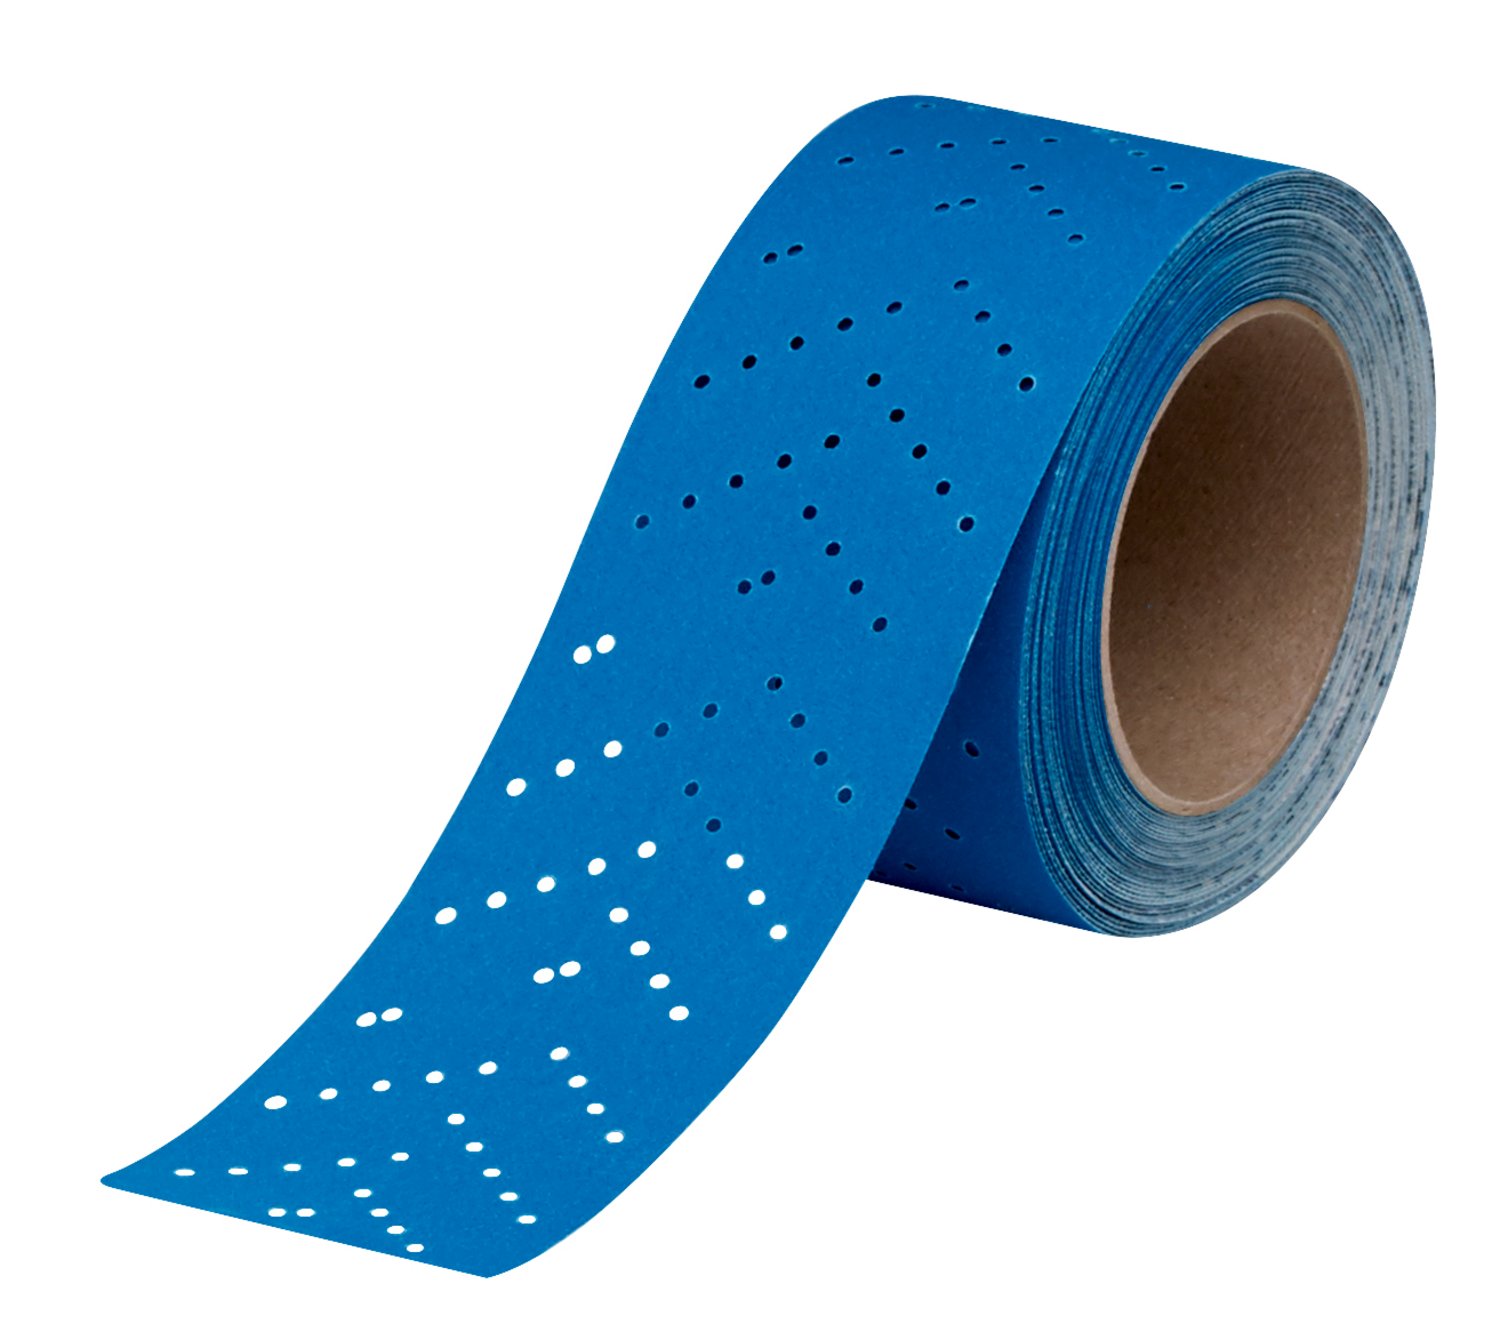 7100091347 - 3M Hookit Blue Abrasive Sheet Roll Multi-hole, 36197, 500, 2.75 in x
13 y, 4 cartons per case